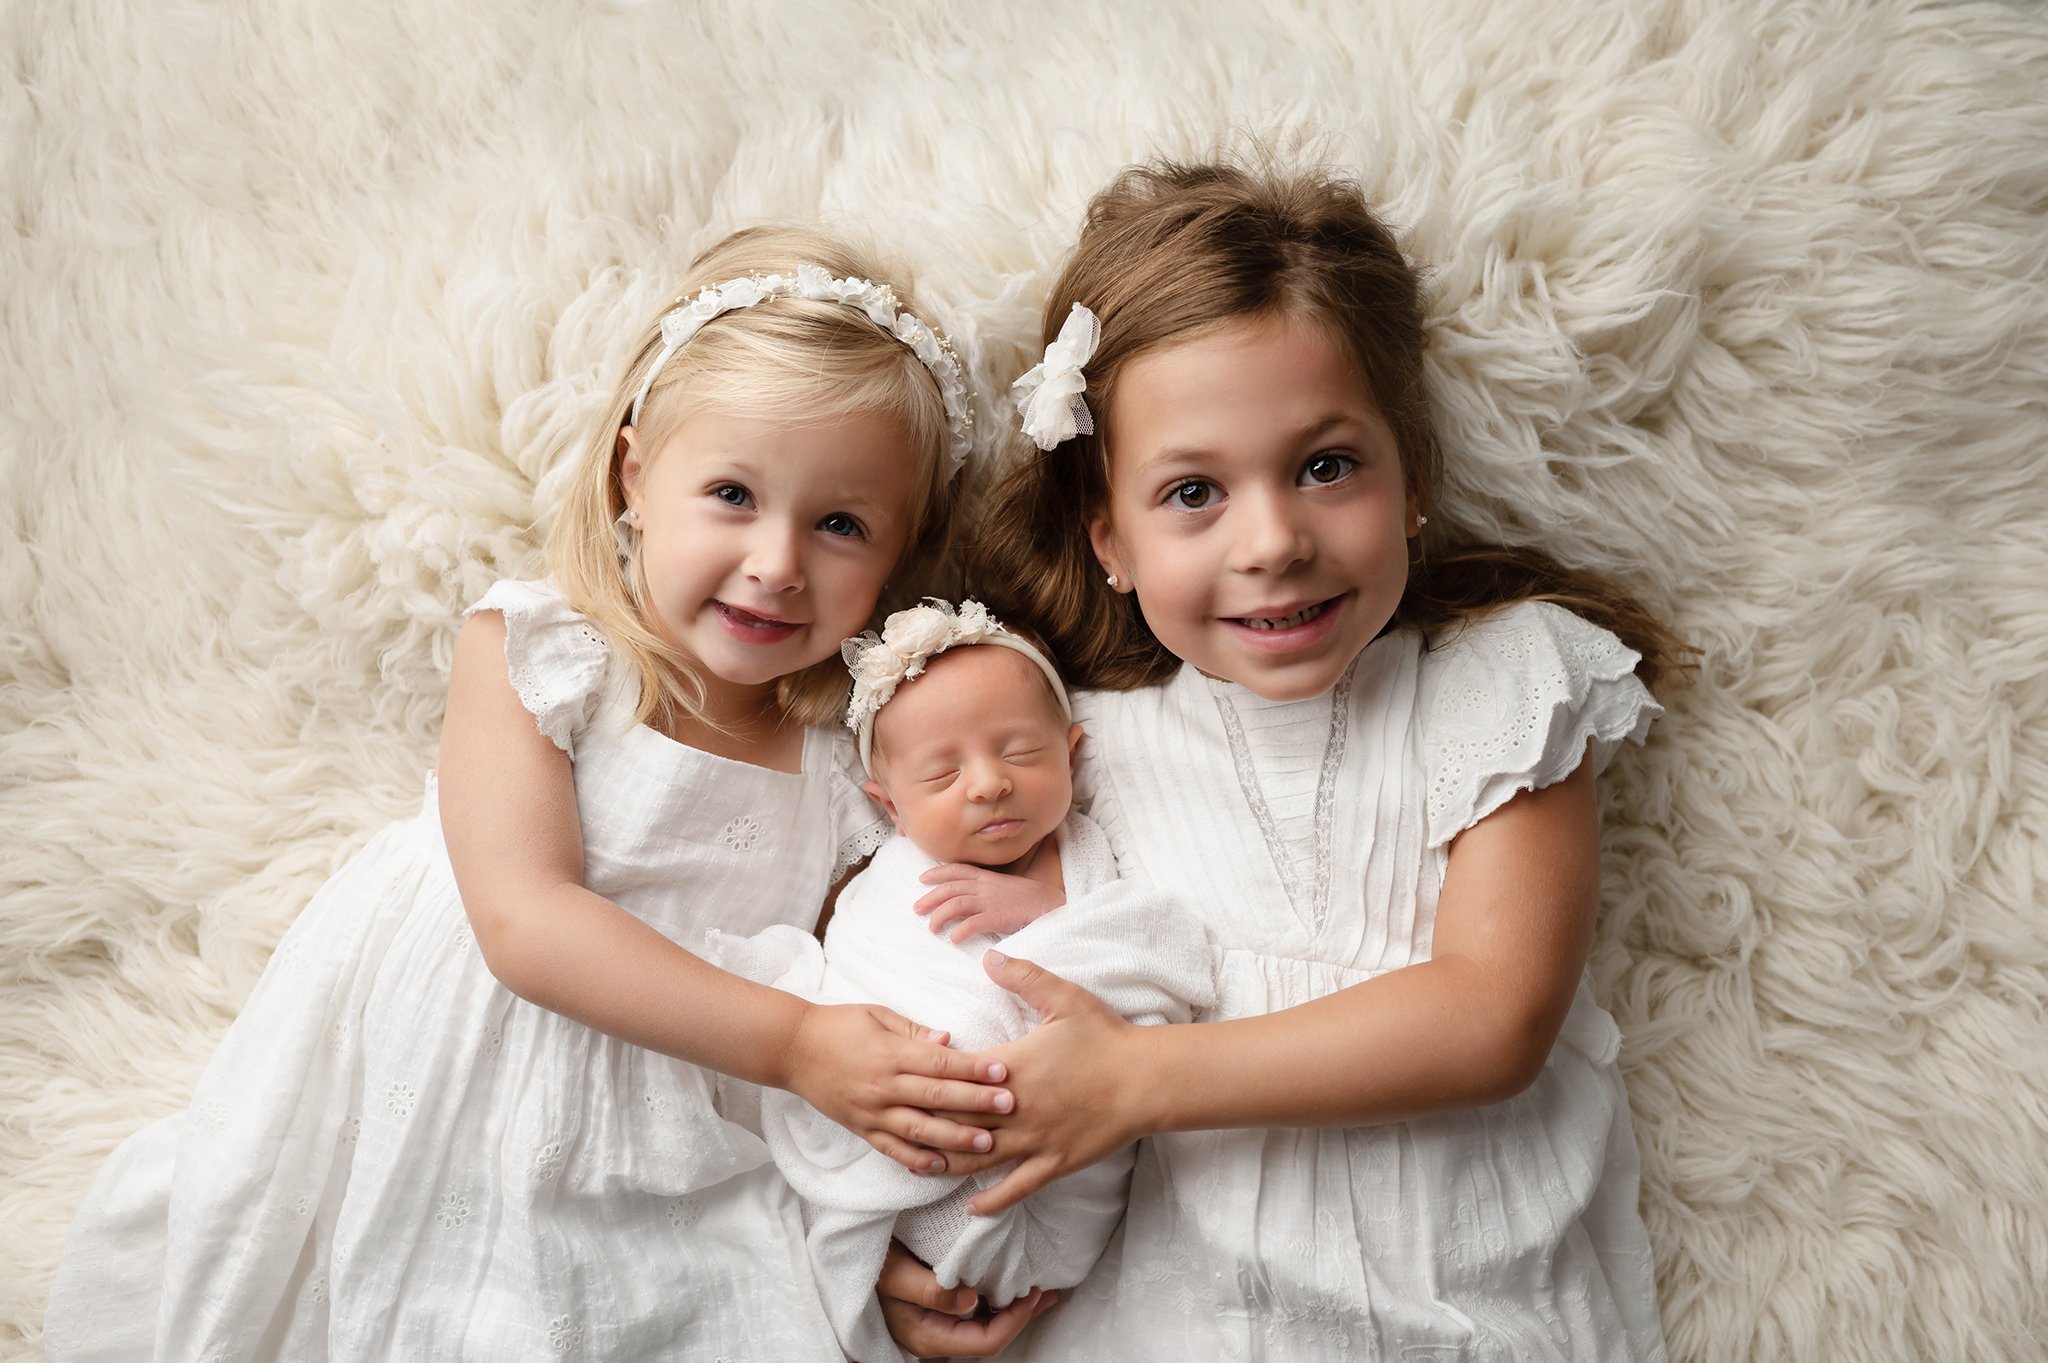 newborn baby and siblings image at columbus ohio newborn photographer studio